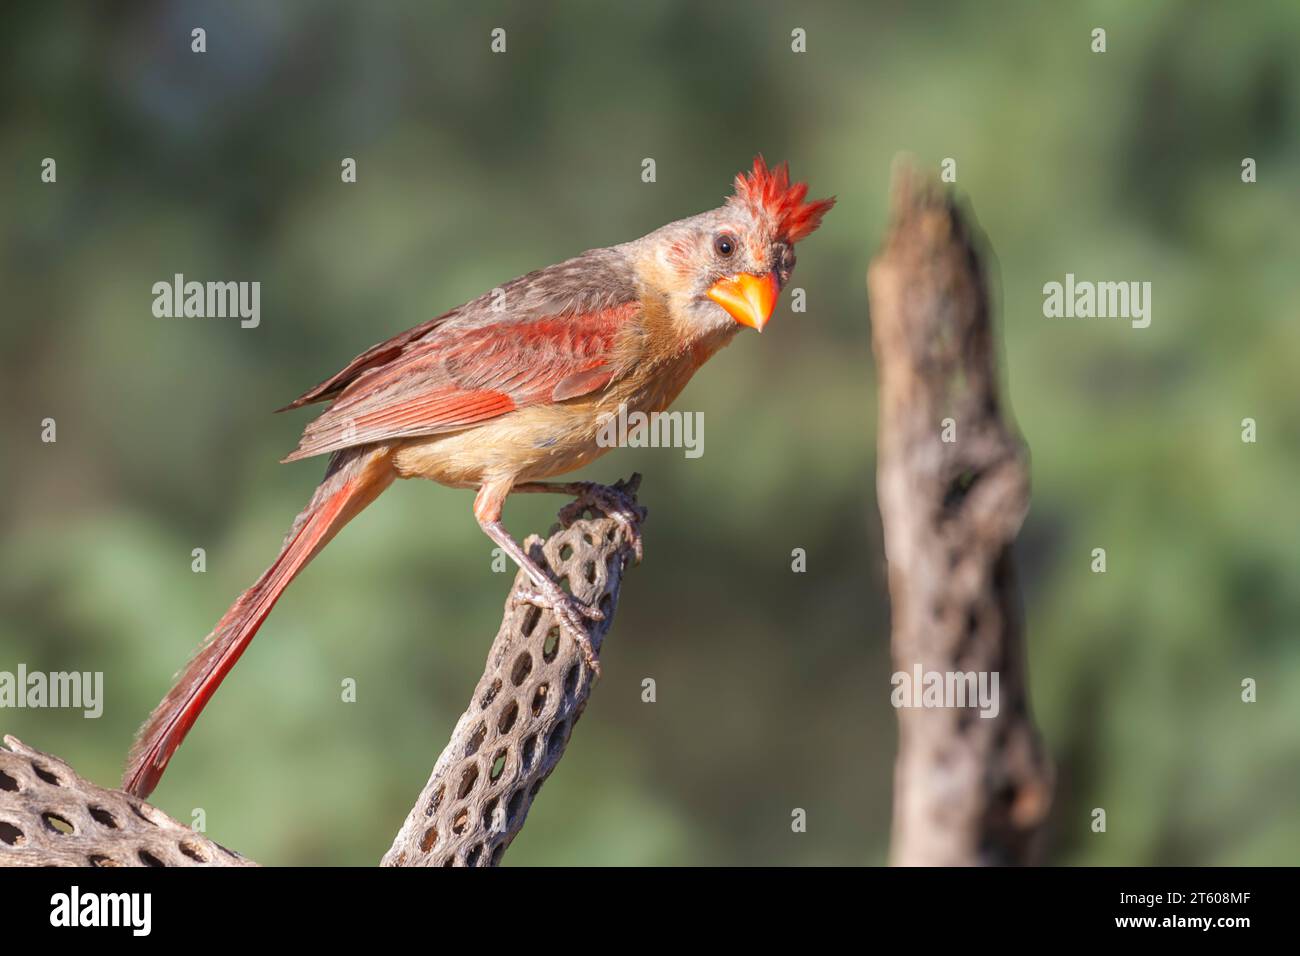 Northern Cardinal, Cardinalis cardinalis, in Arizona desert. Stock Photo